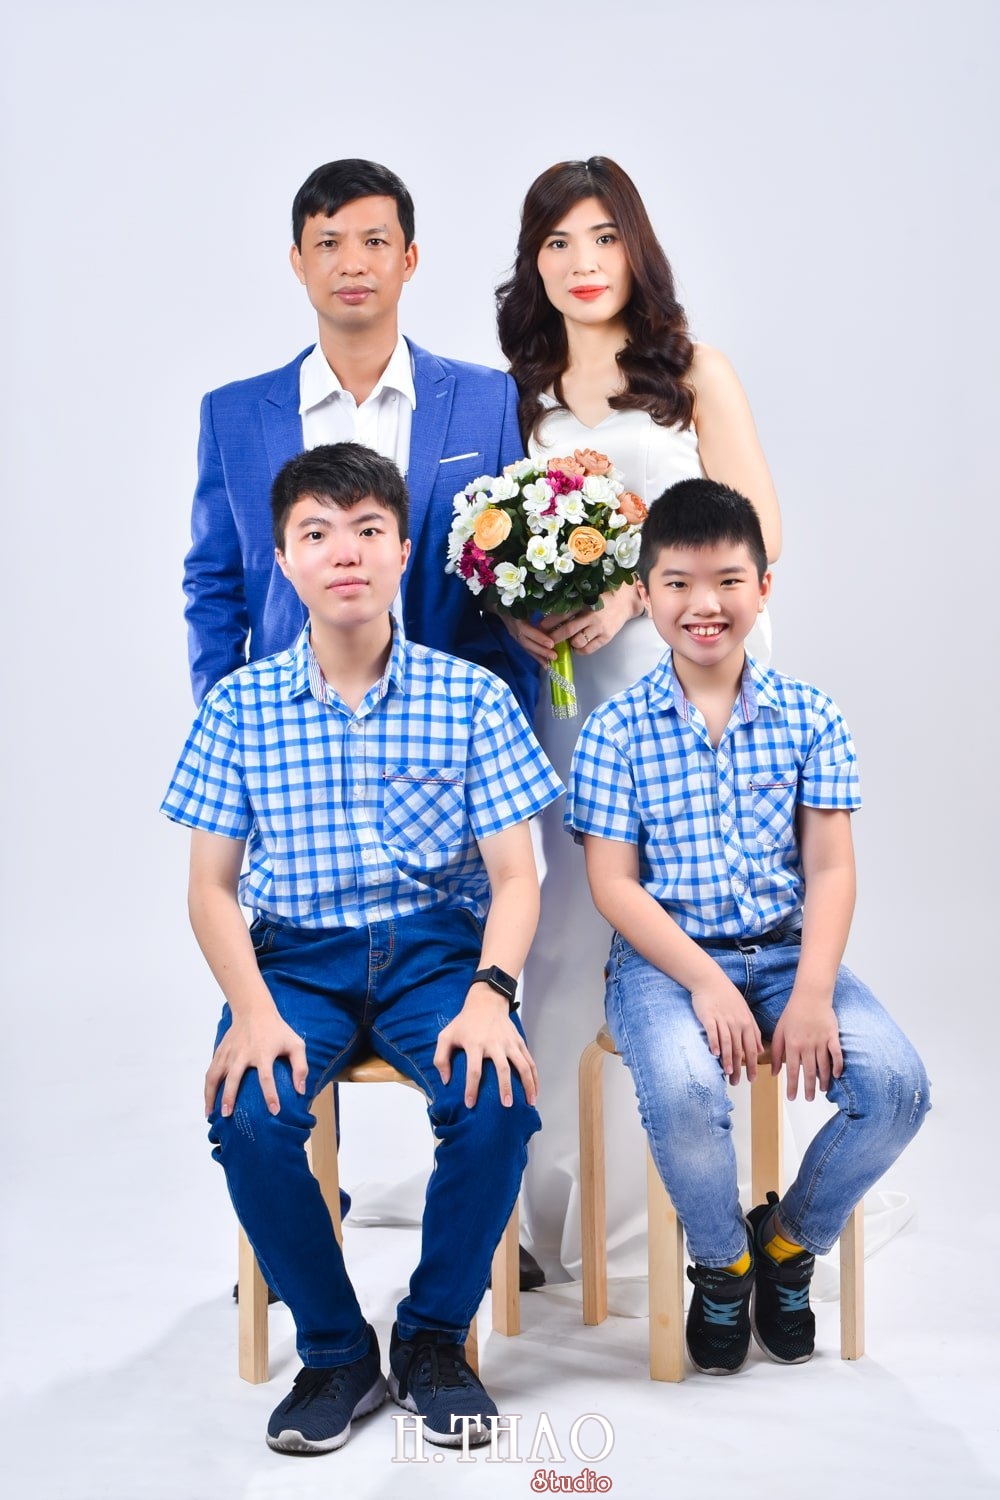 Anh gia dinh 4 nguoi 1 min - 45 cách tạo dáng chụp ảnh gia đình 4 người ấn tượng nhất - HThao Studio